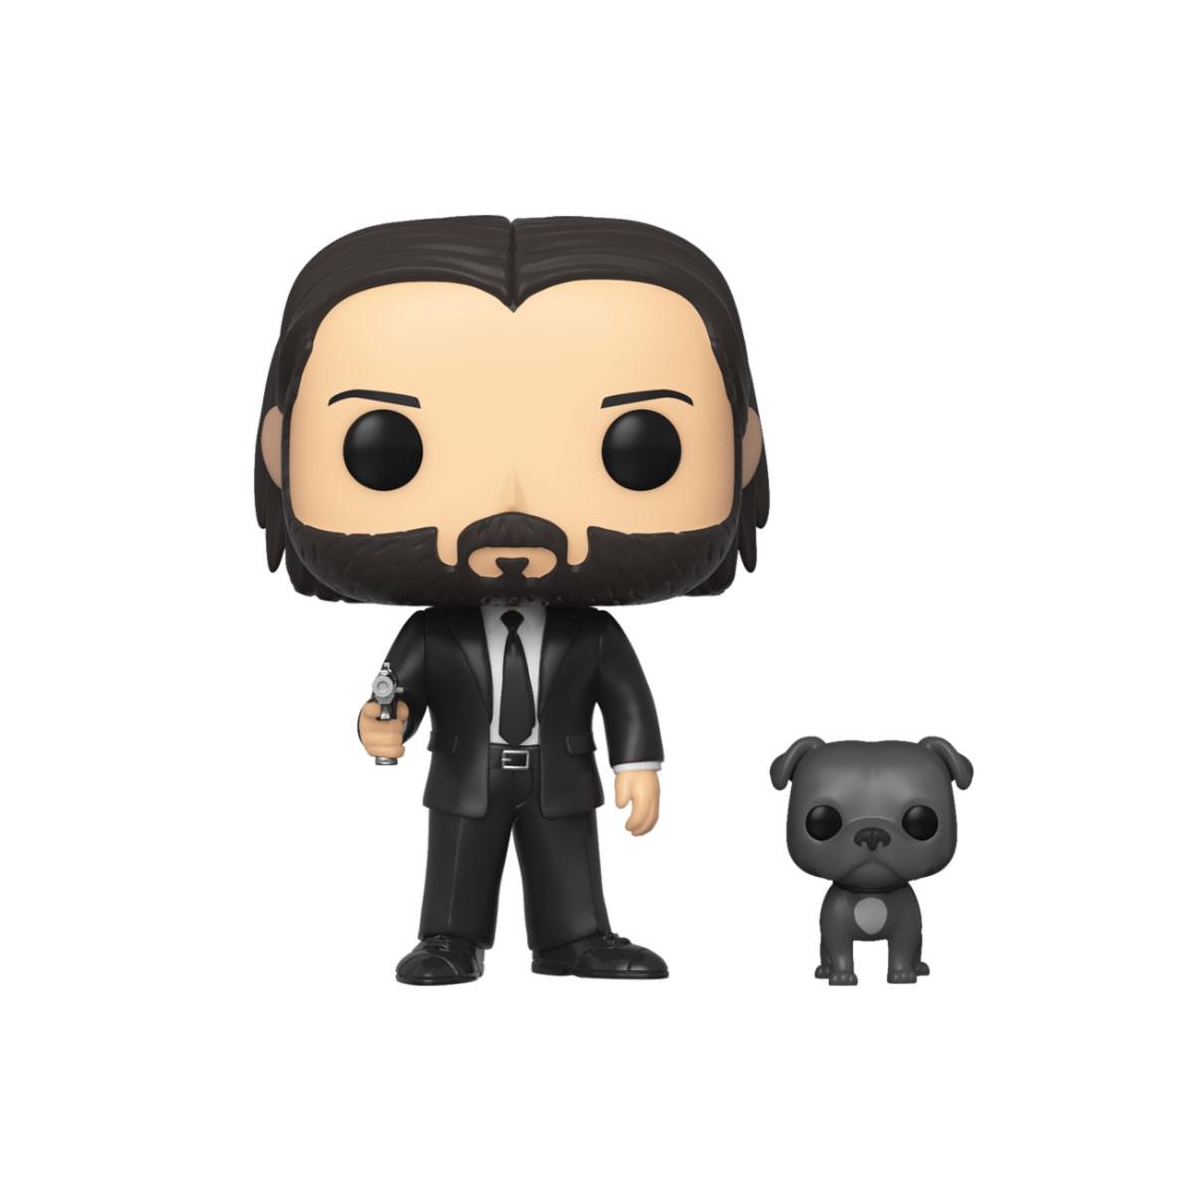 John Wick - Figurine POP! John Wick costume noir avec son chien 9